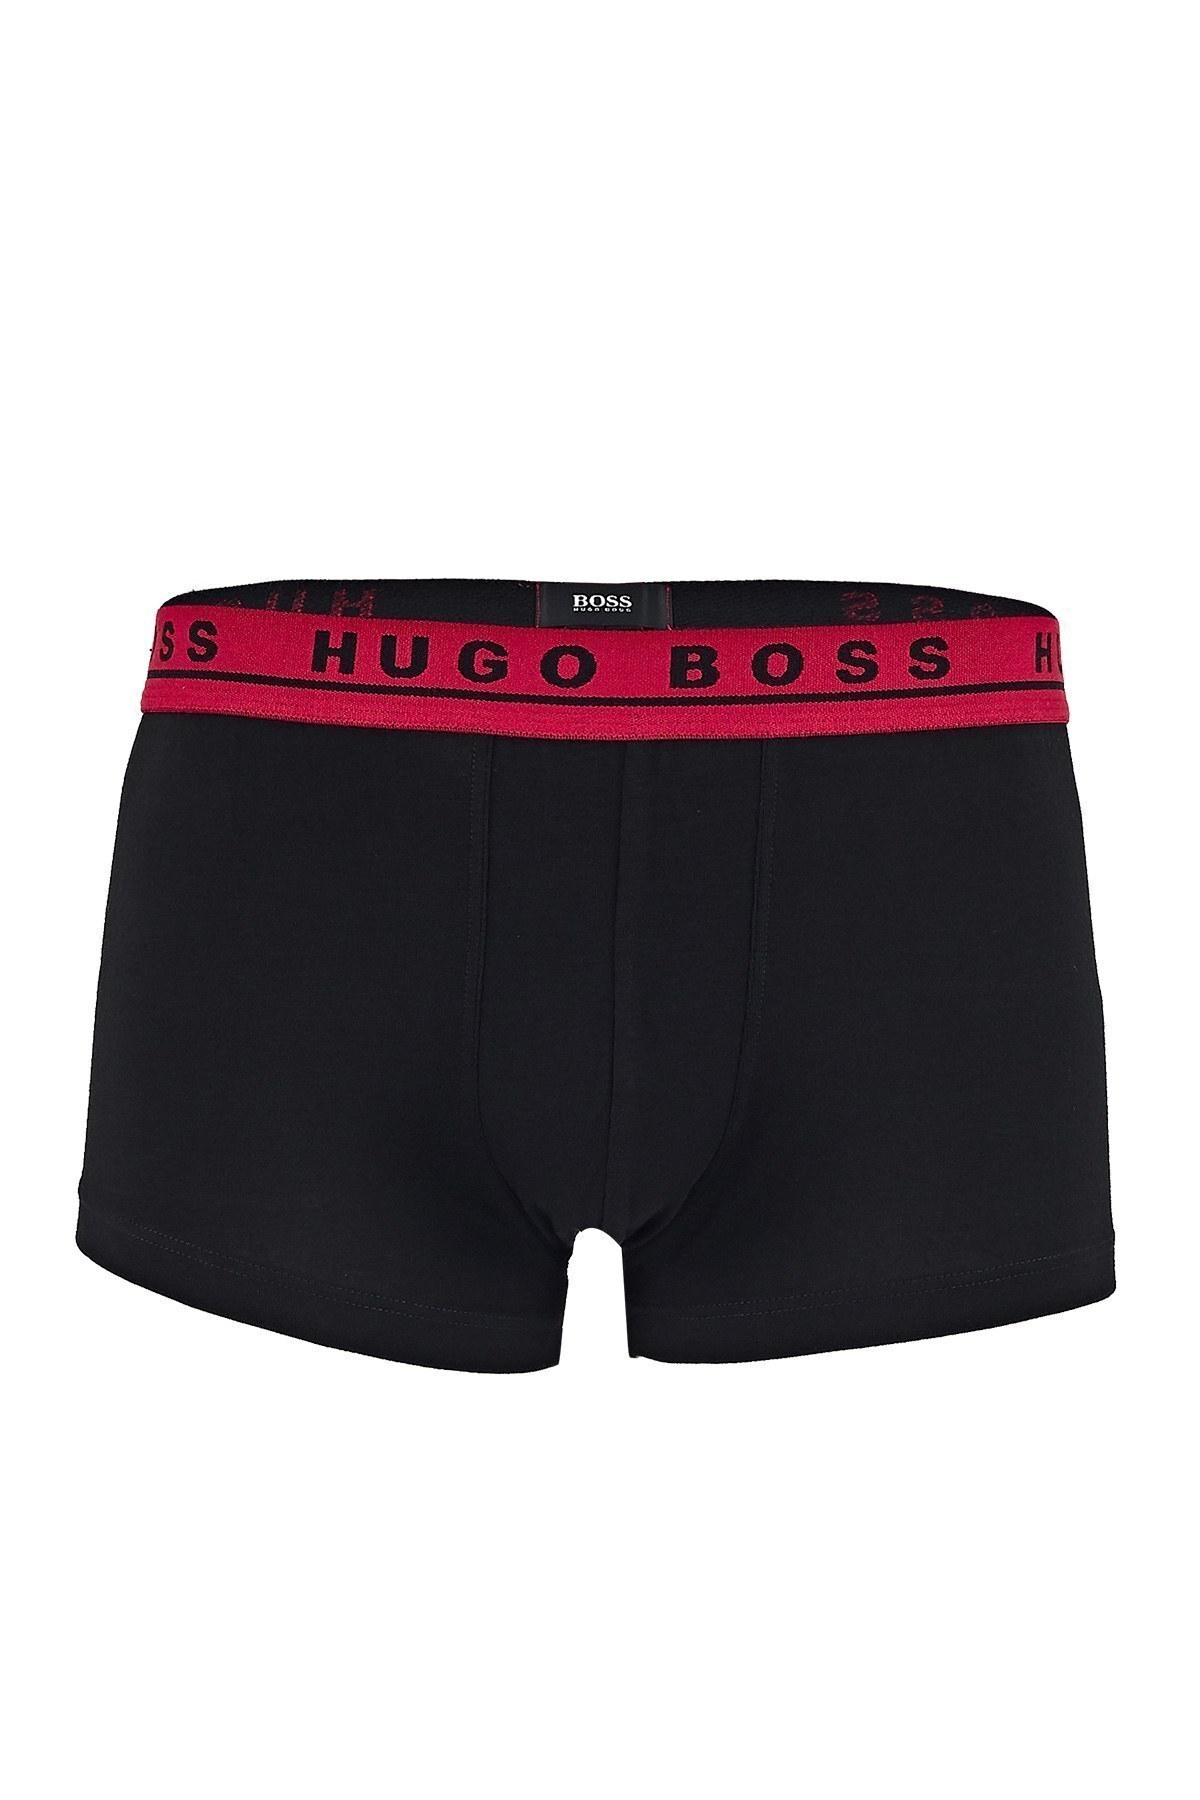 Hugo Boss Pamuklu 3 Pack Erkek Boxer 50438342 965 Siyah-Kırmızı-Gri